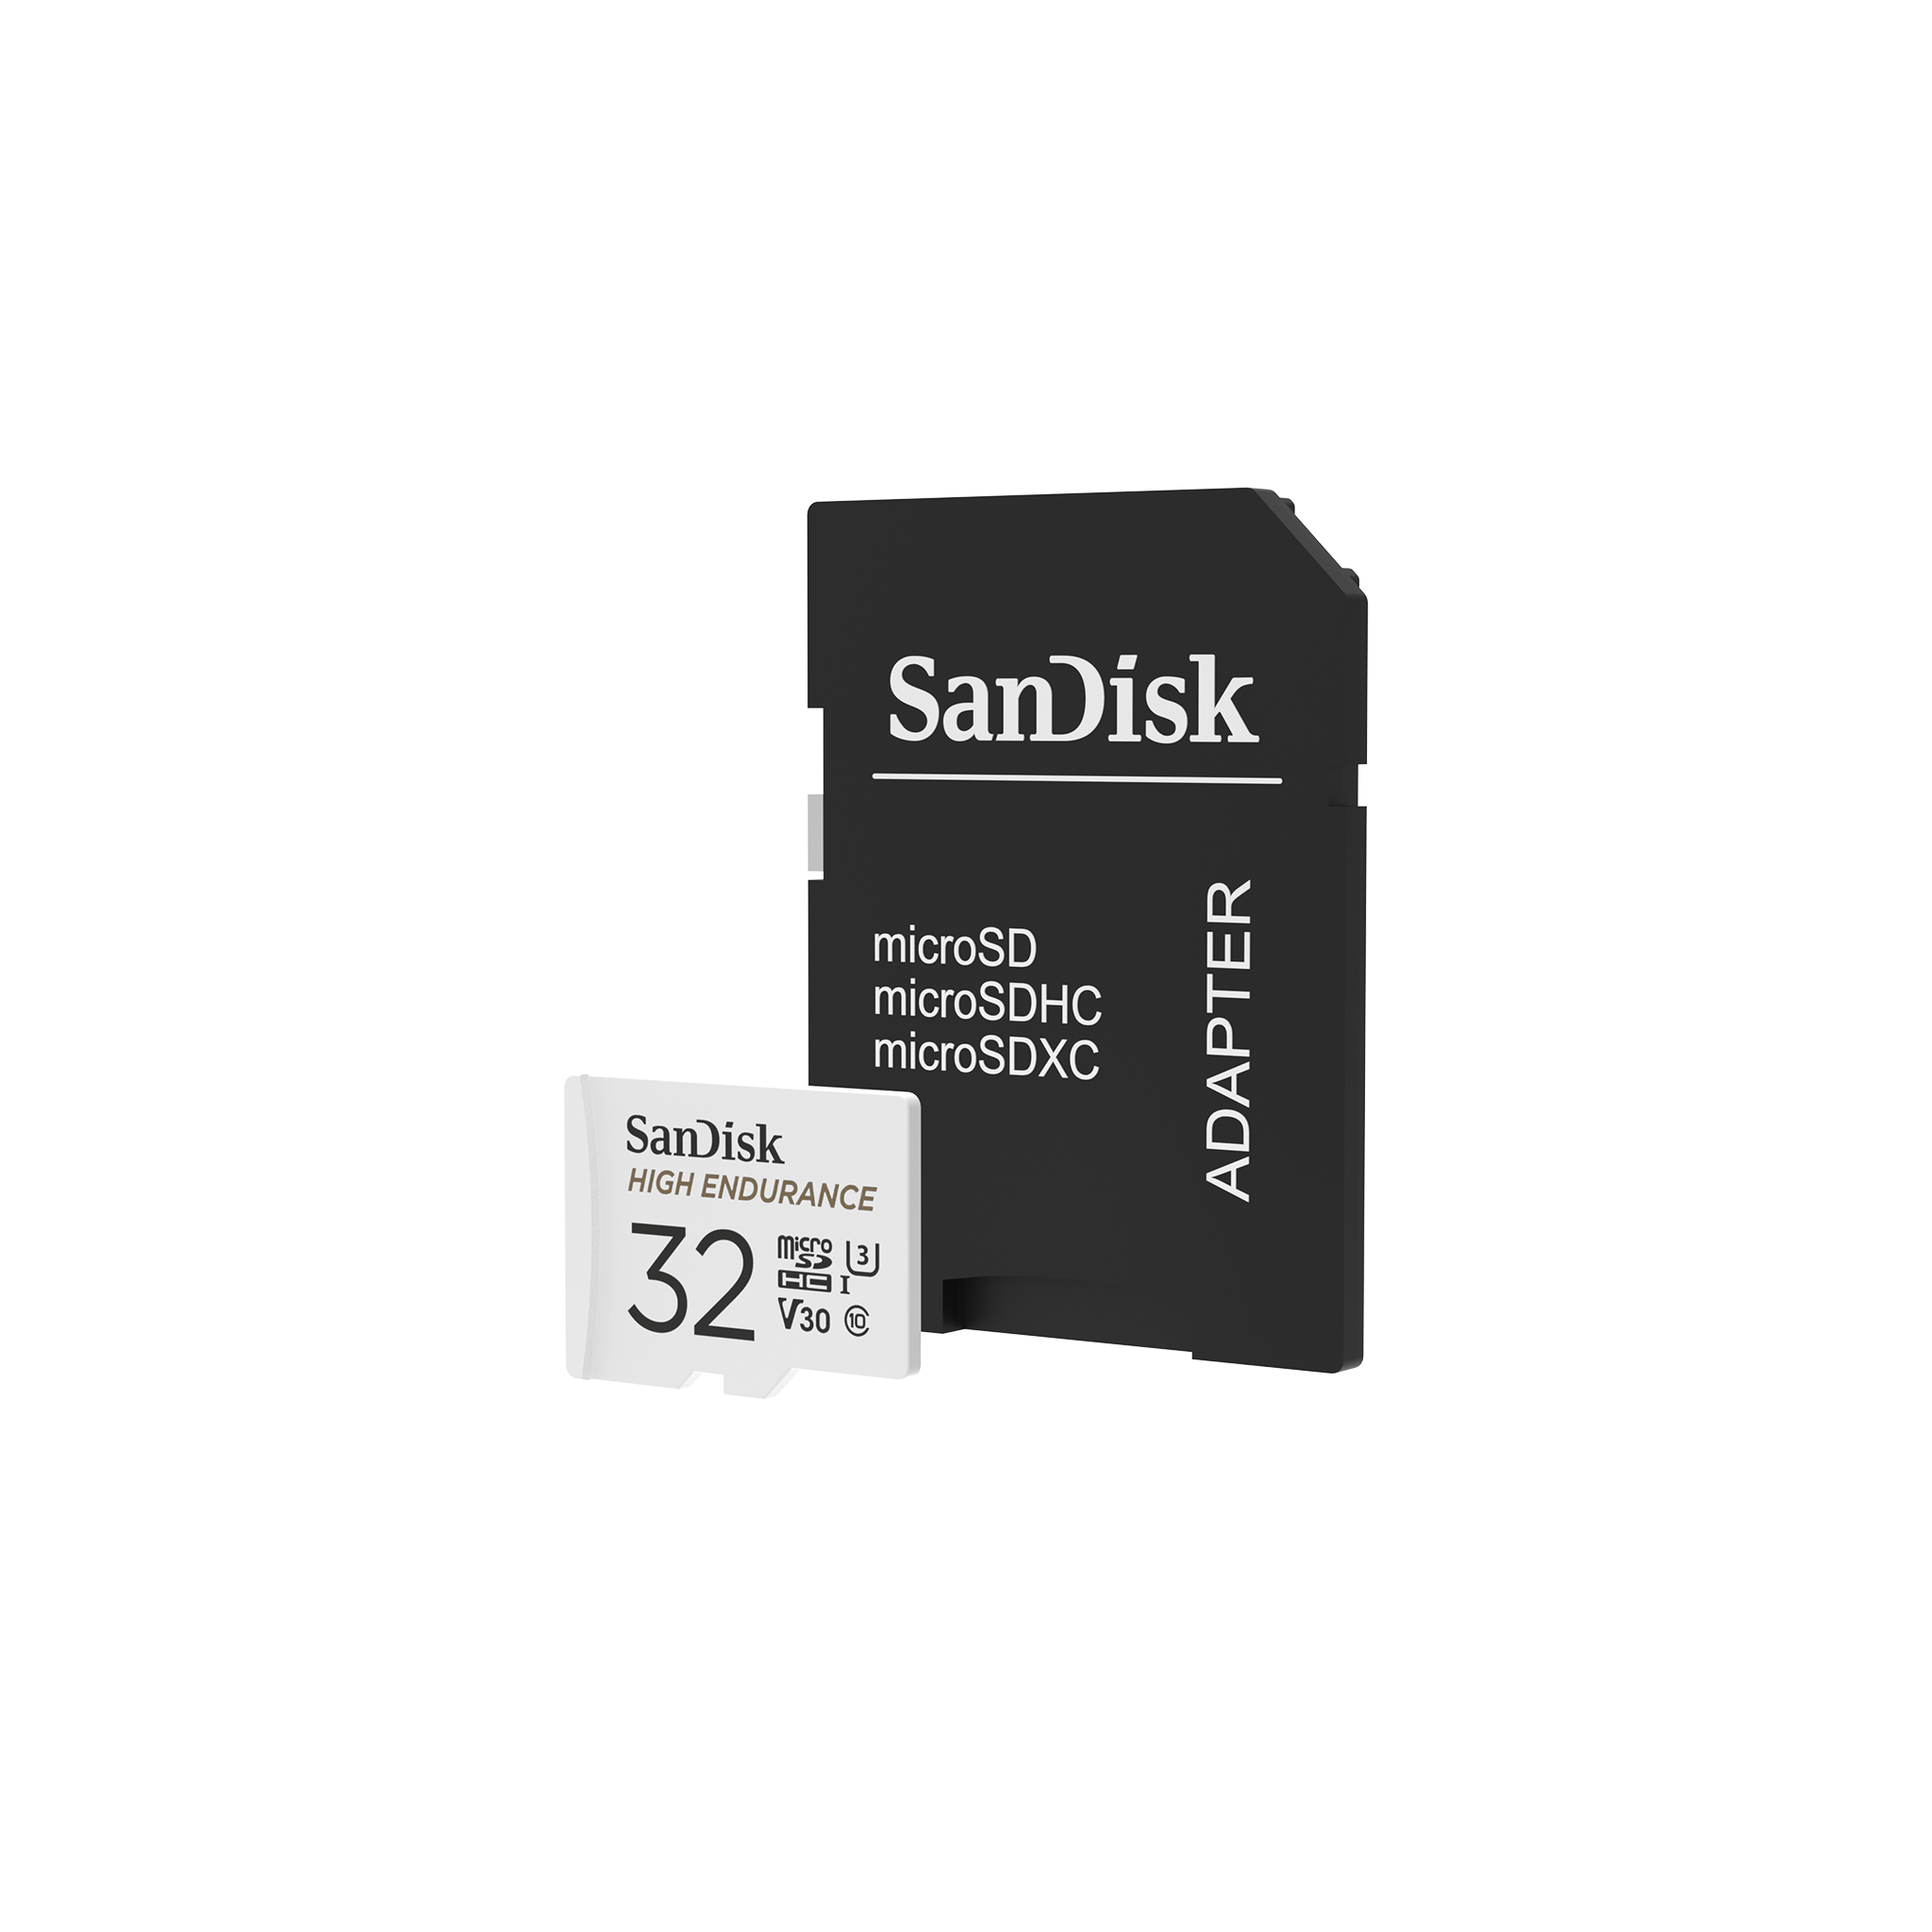 SanDisk 32GB High Endurance.png__PID:73595123-9b27-4a04-88b3-b3b02ba4b4a0